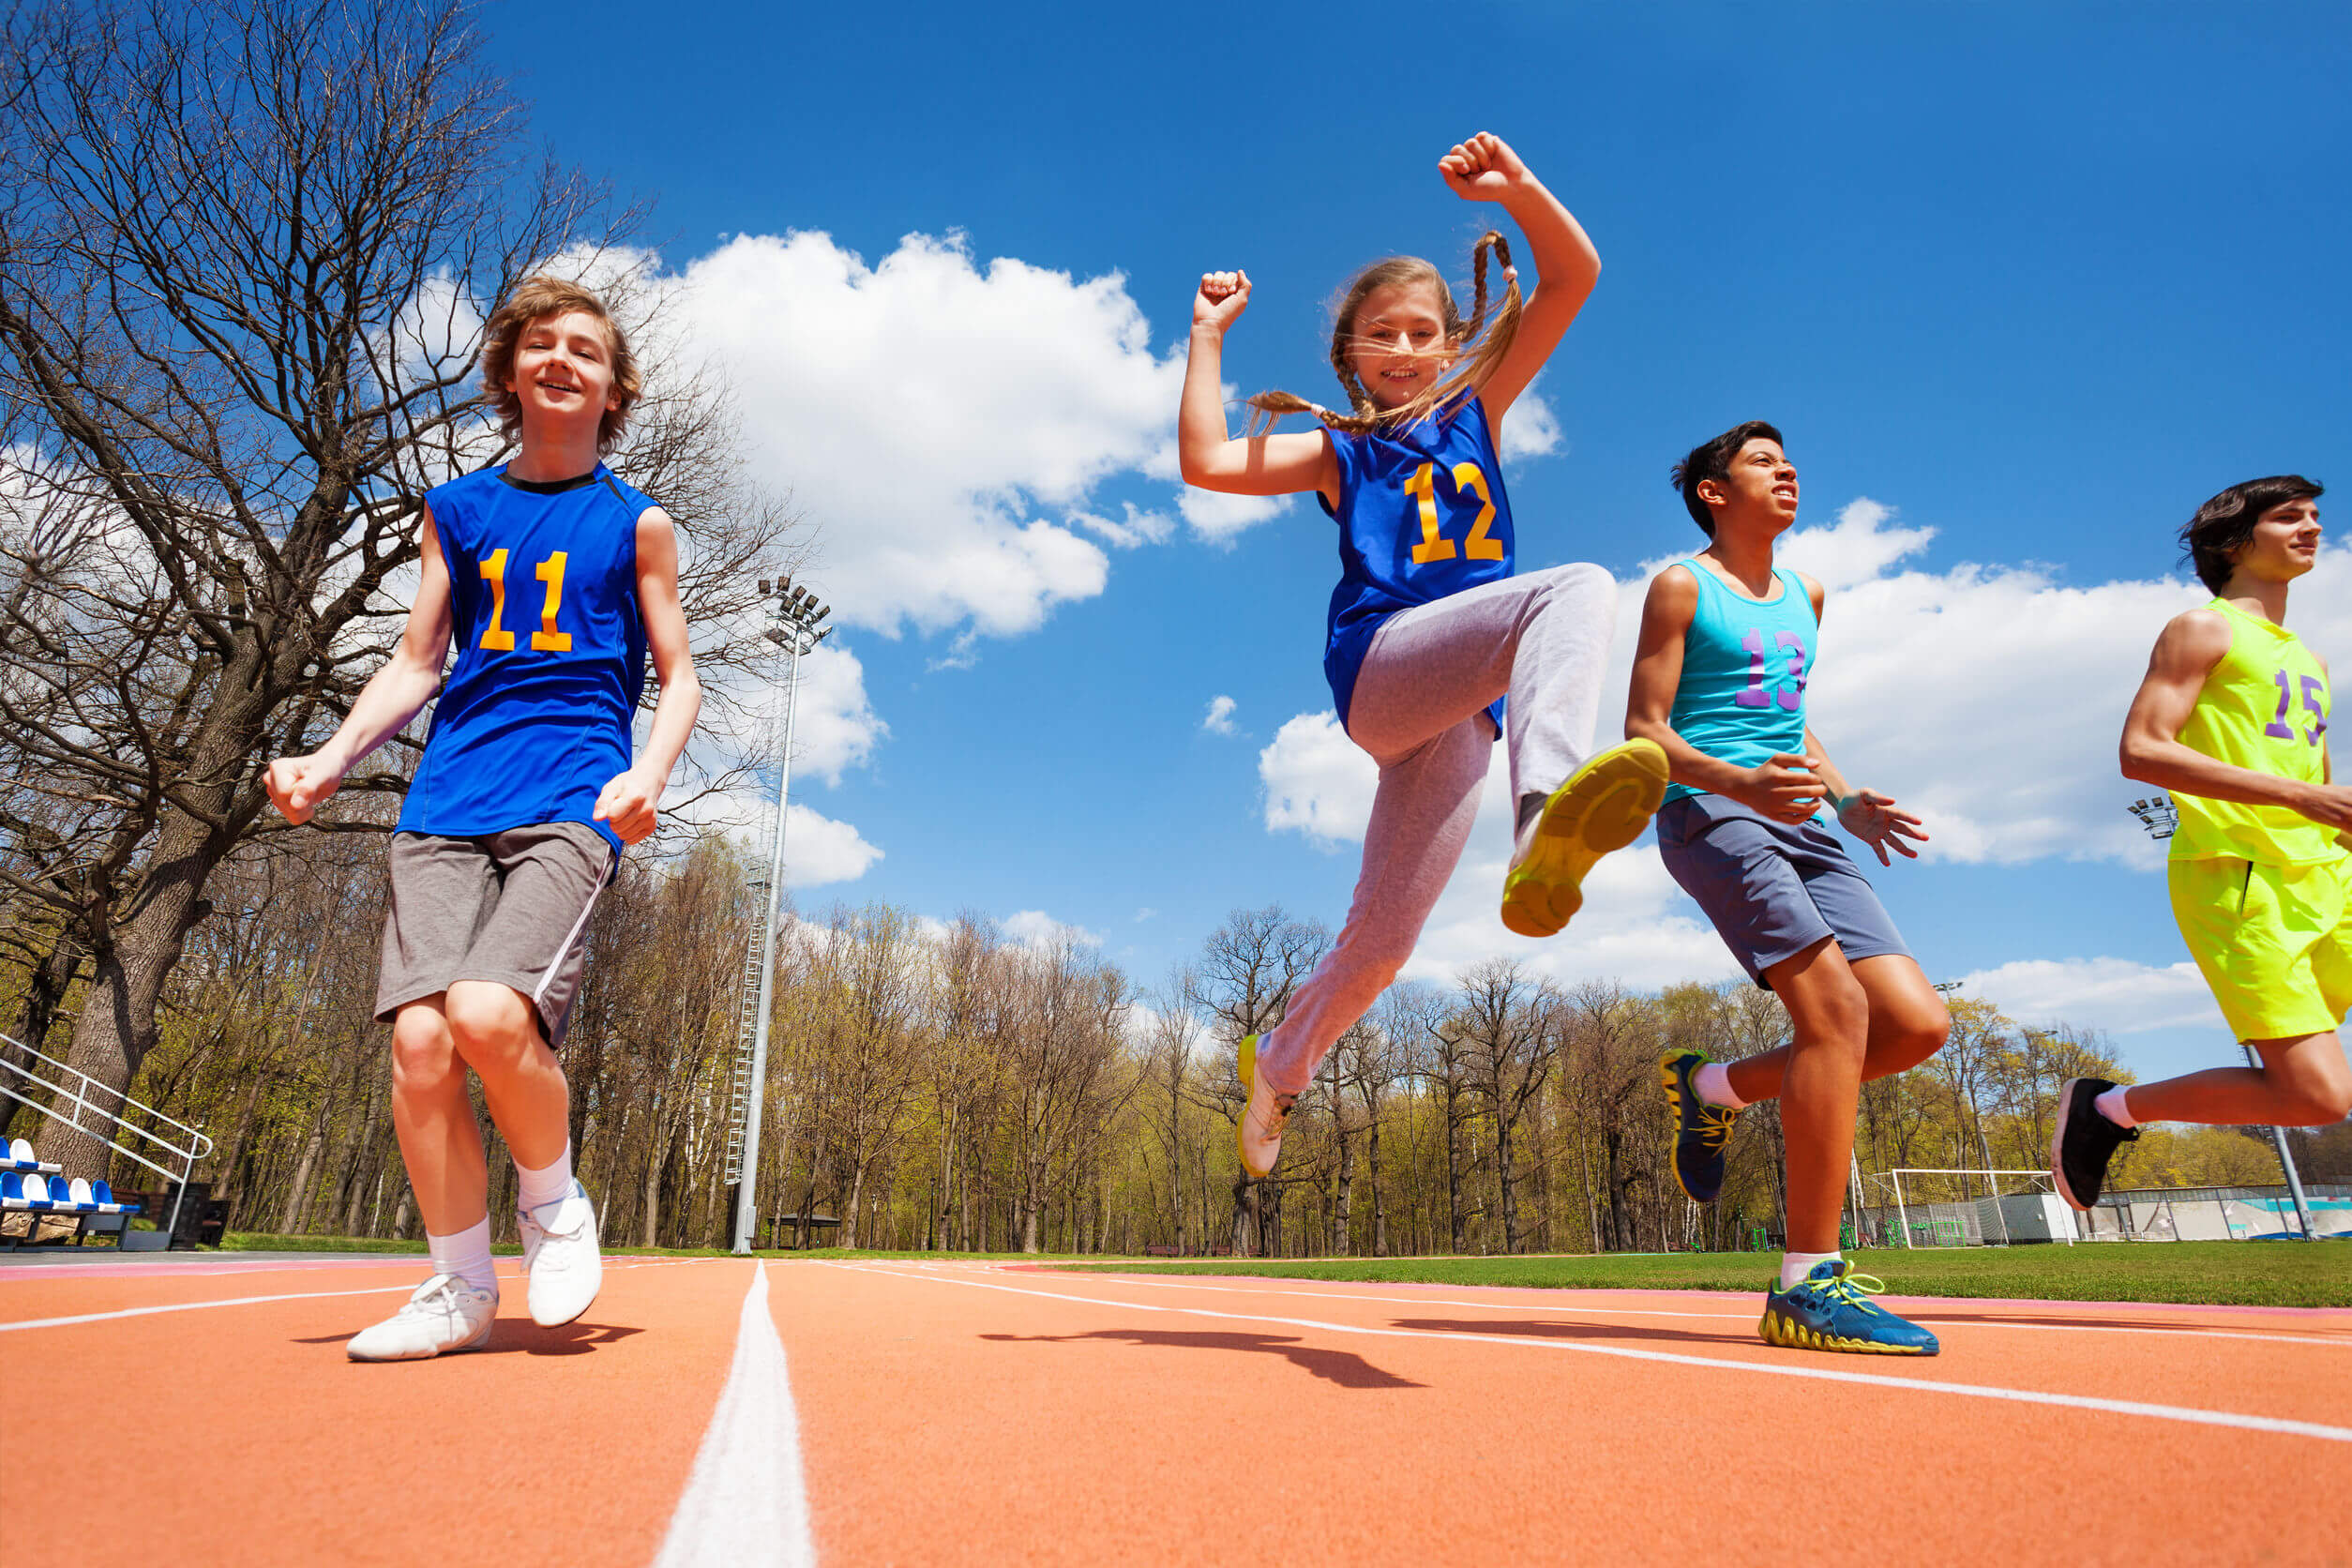 Enfants pratiquant l'athlétisme avec esprit sportif.